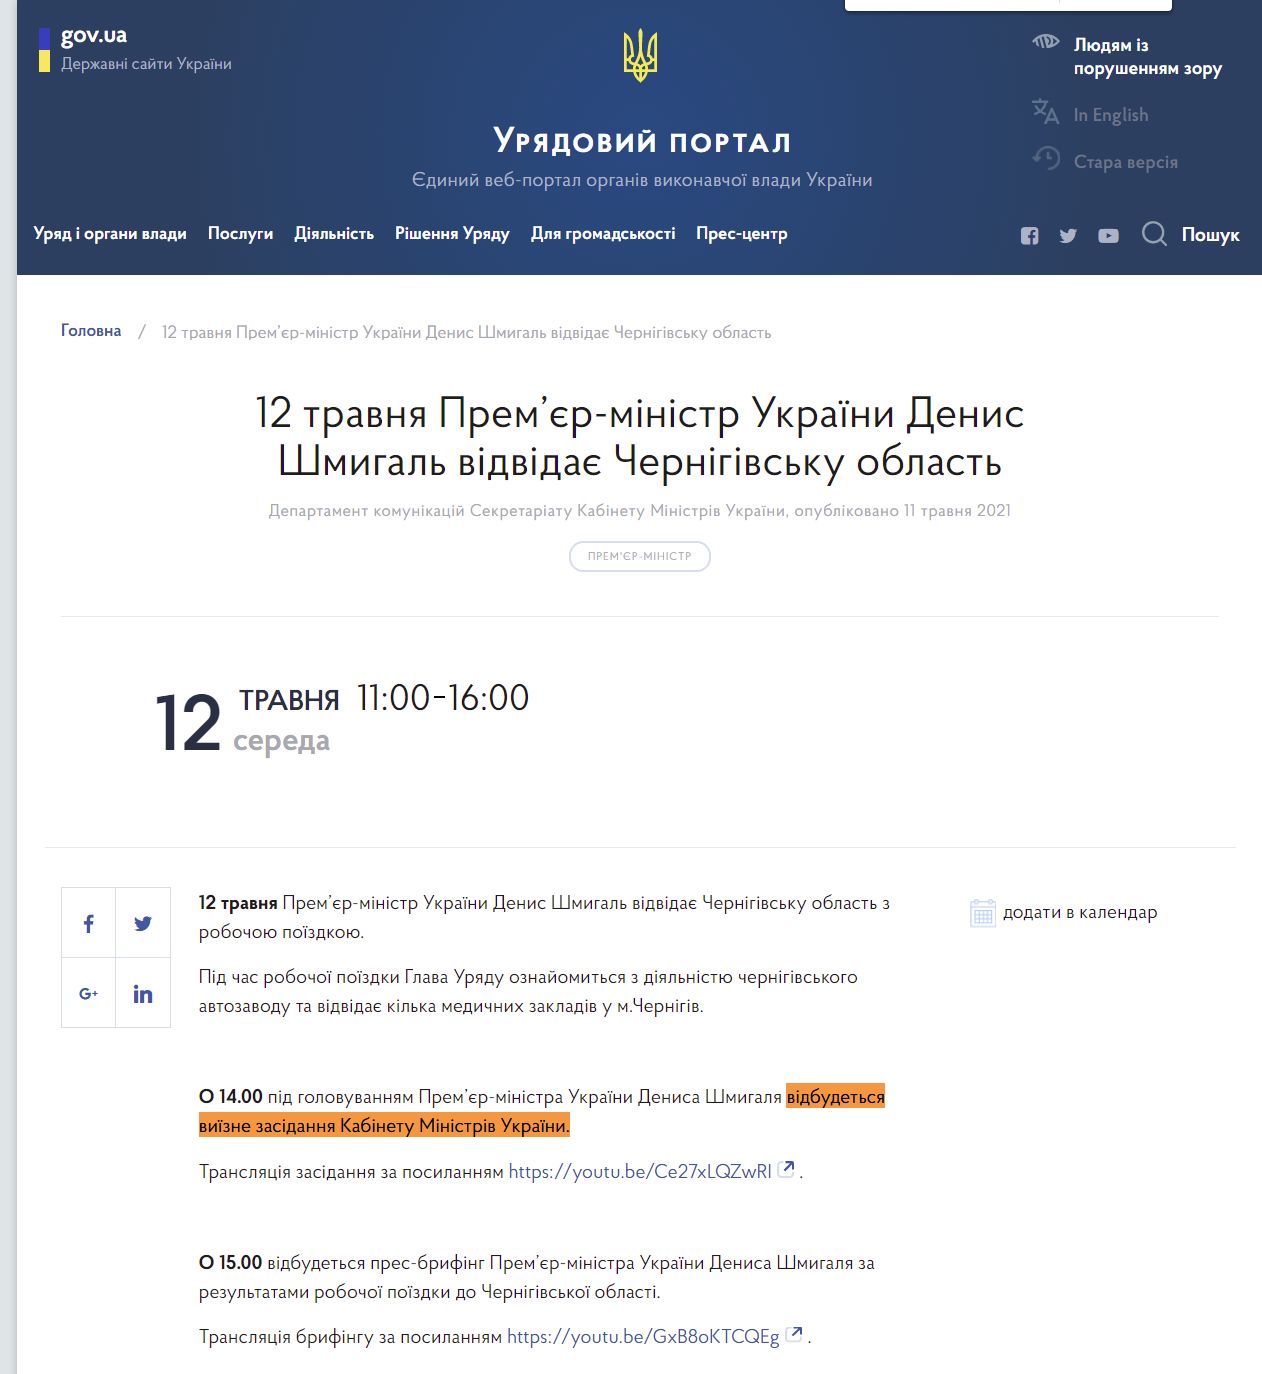 https://www.kmu.gov.ua/events/12-travnya-premyer-ministr-ukrayini-denis-shmigal-vidvidaye-chernigivsku-oblast